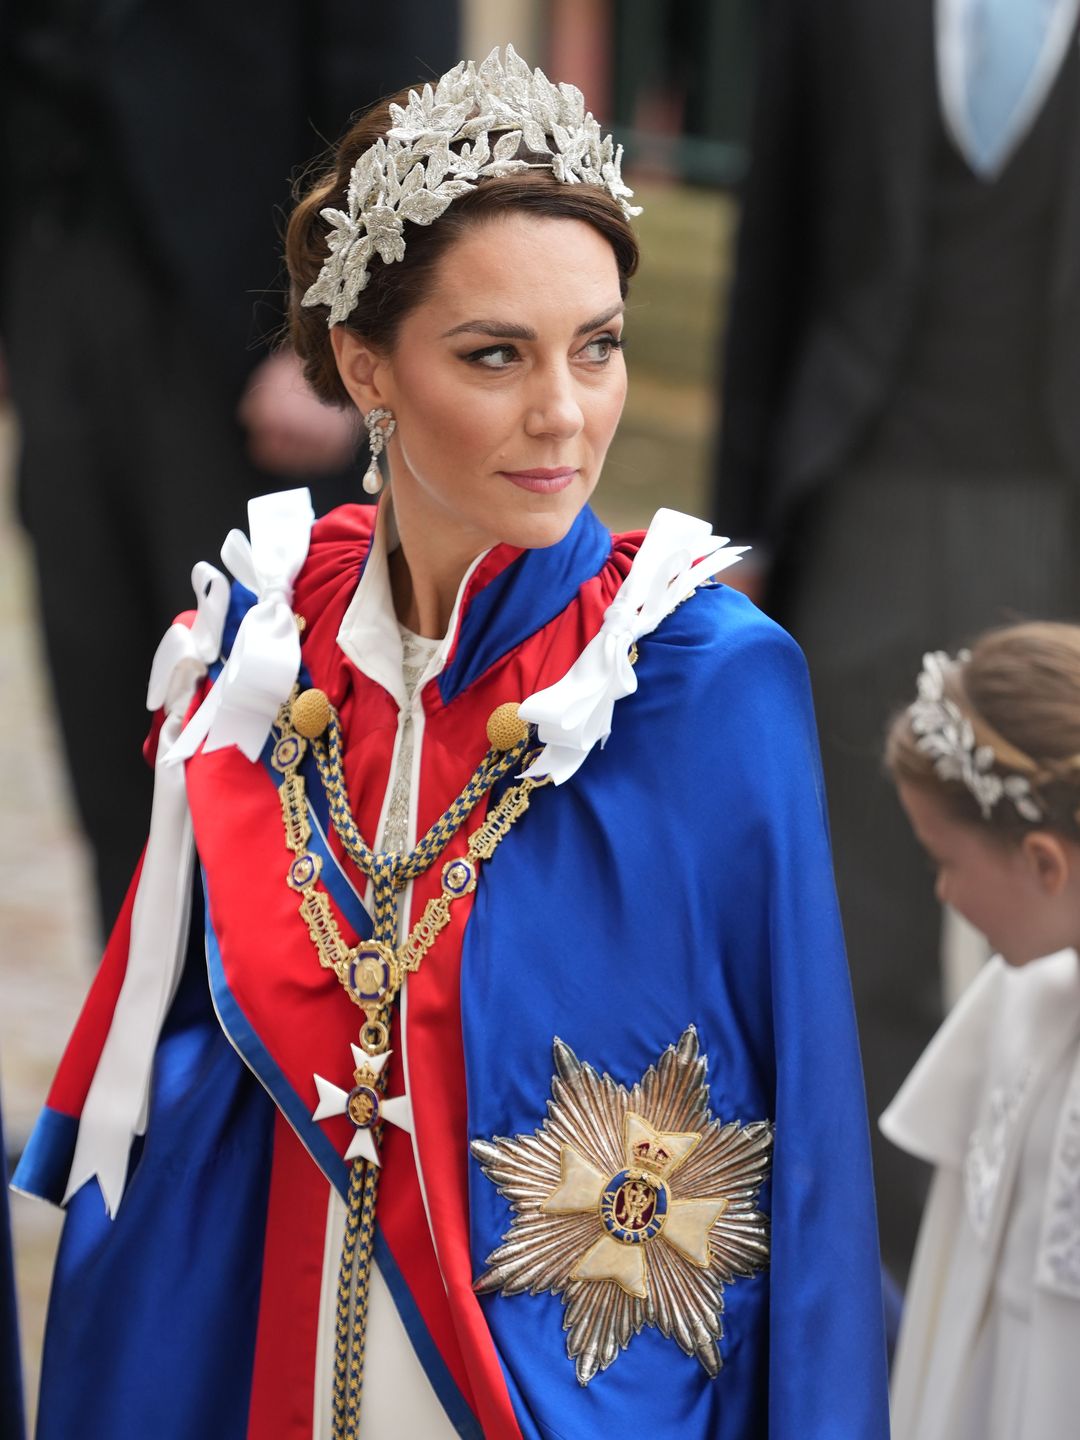 The Princess of Wales at the coronation